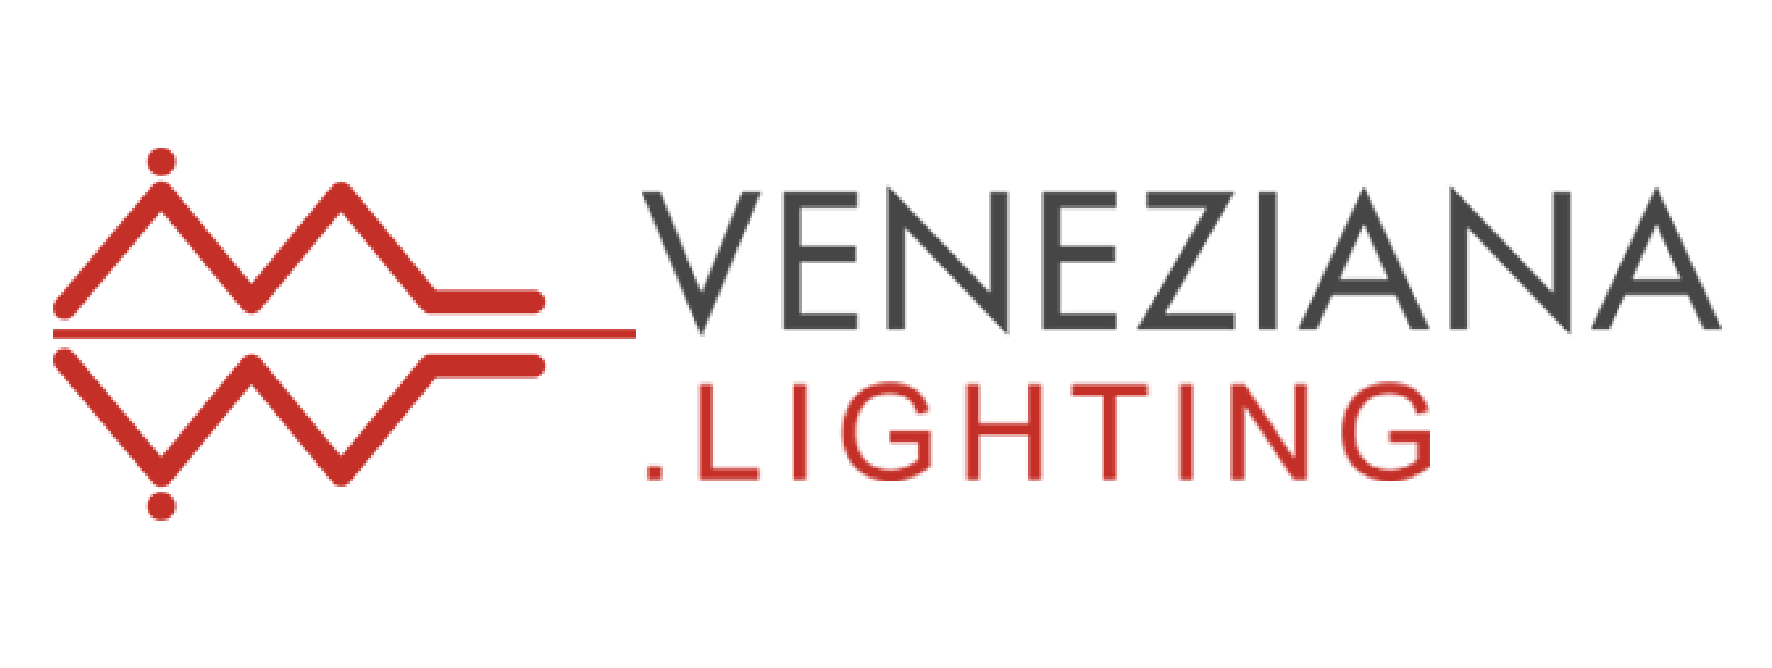 Veneziana Lighting